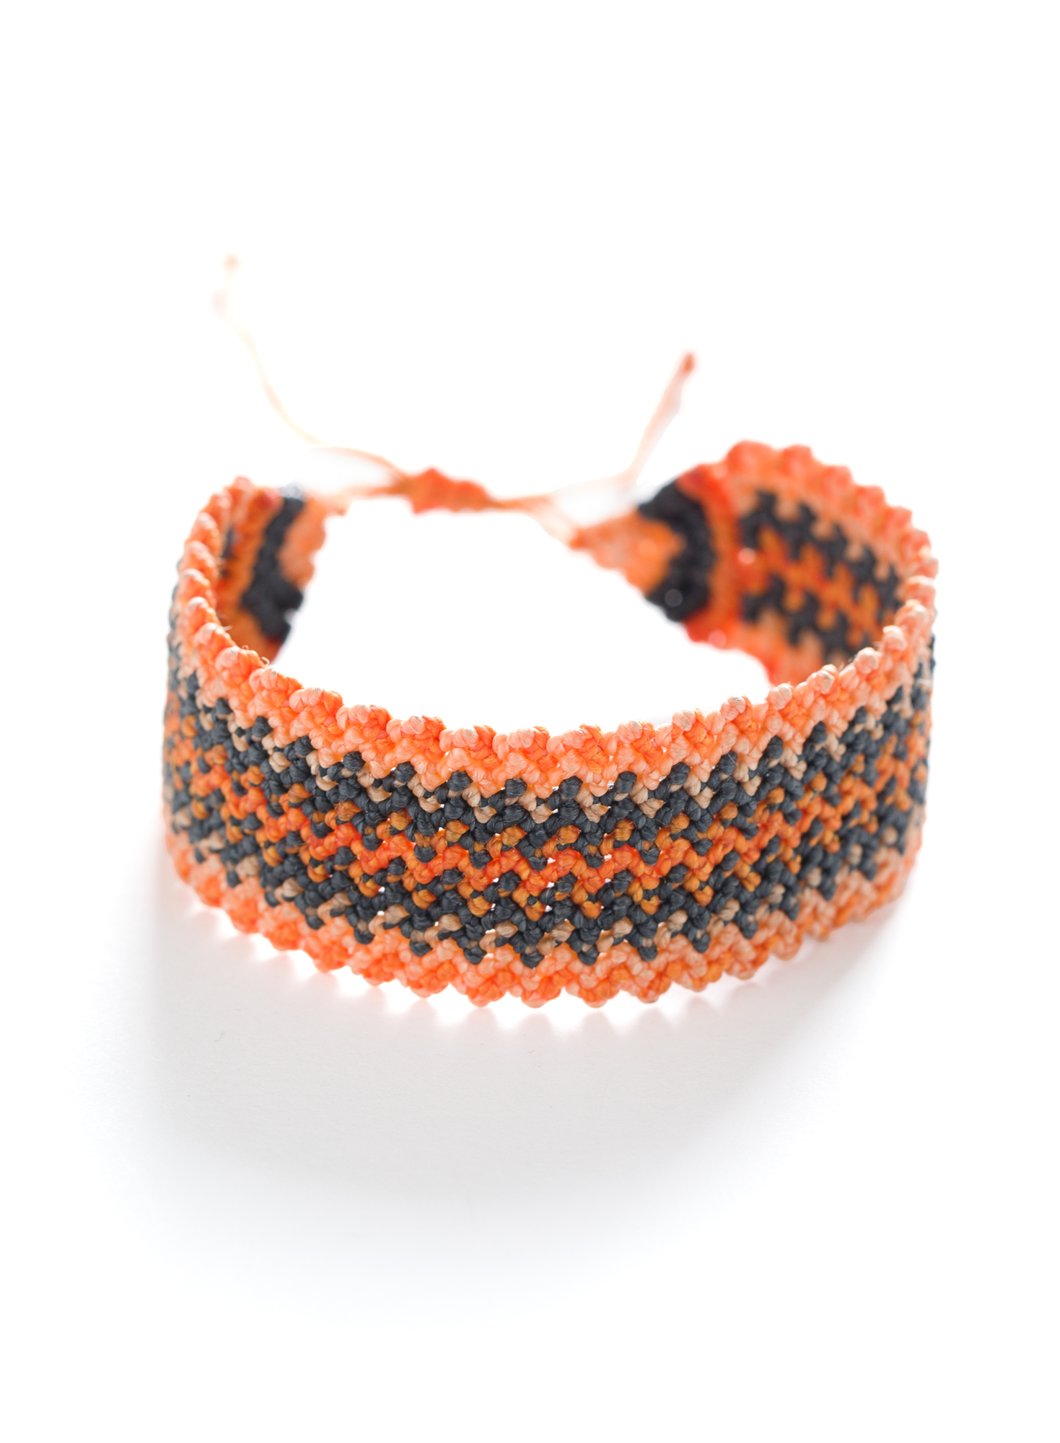 Bracelets macramé très coloré nylon du Pérou à prix discount